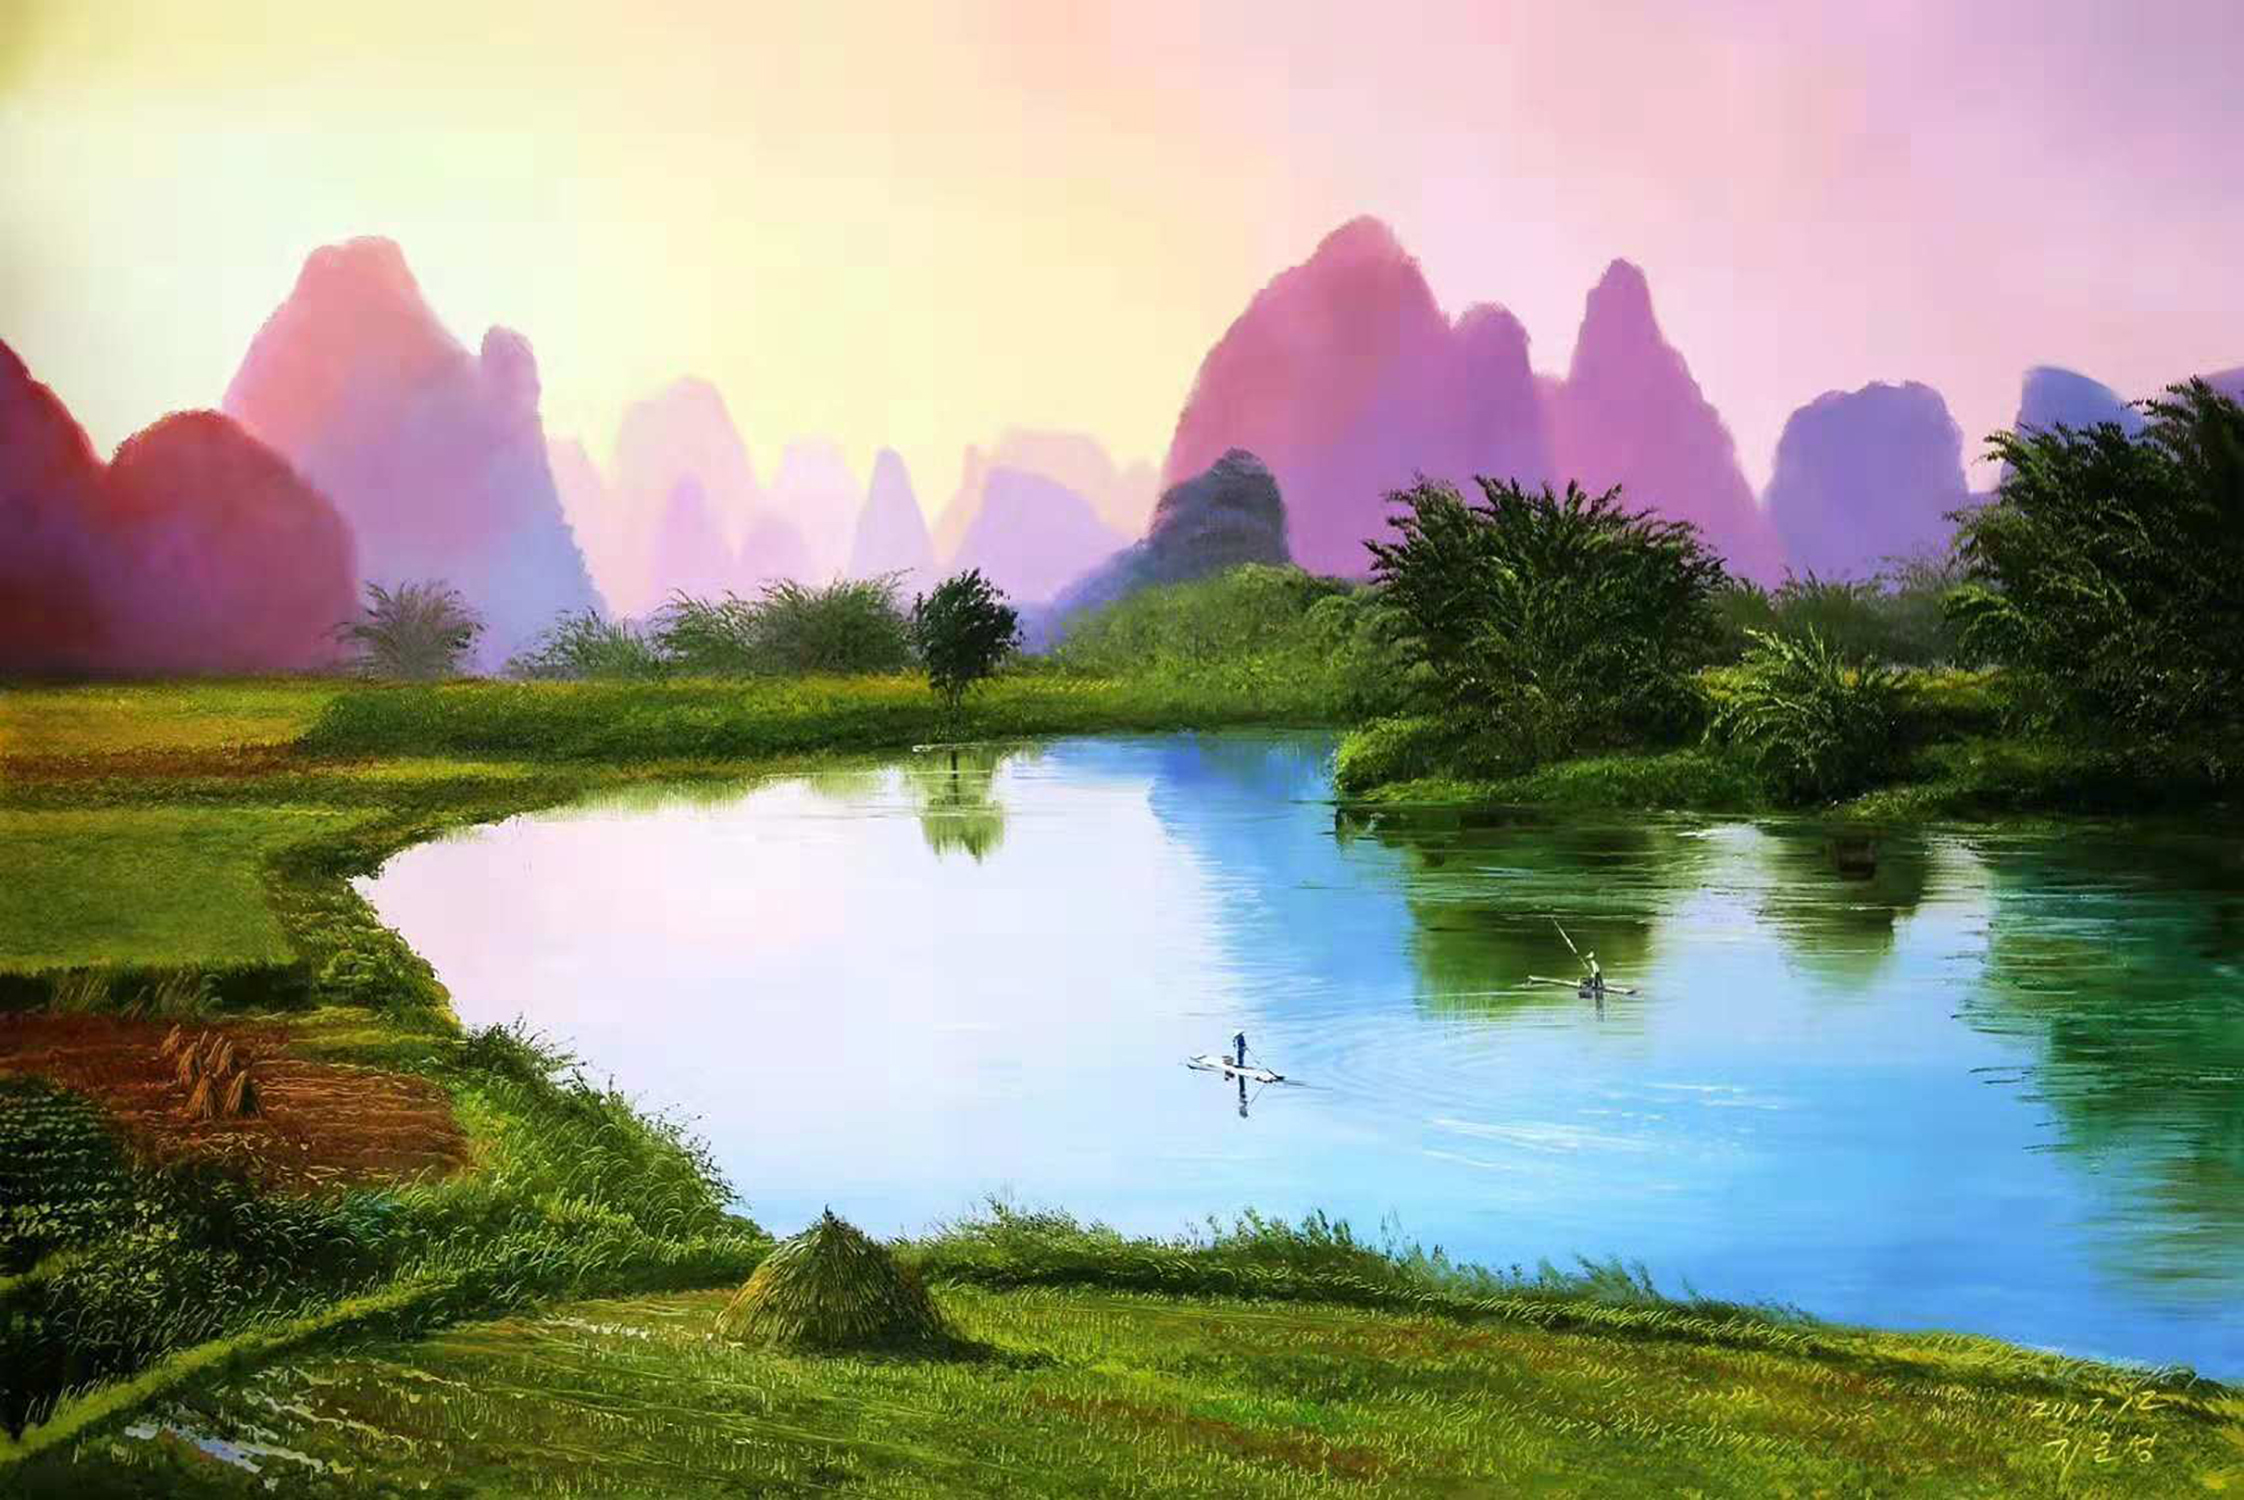 油画欣赏:一组描绘山水间渔翁捕鱼,牧童暮归的风景画